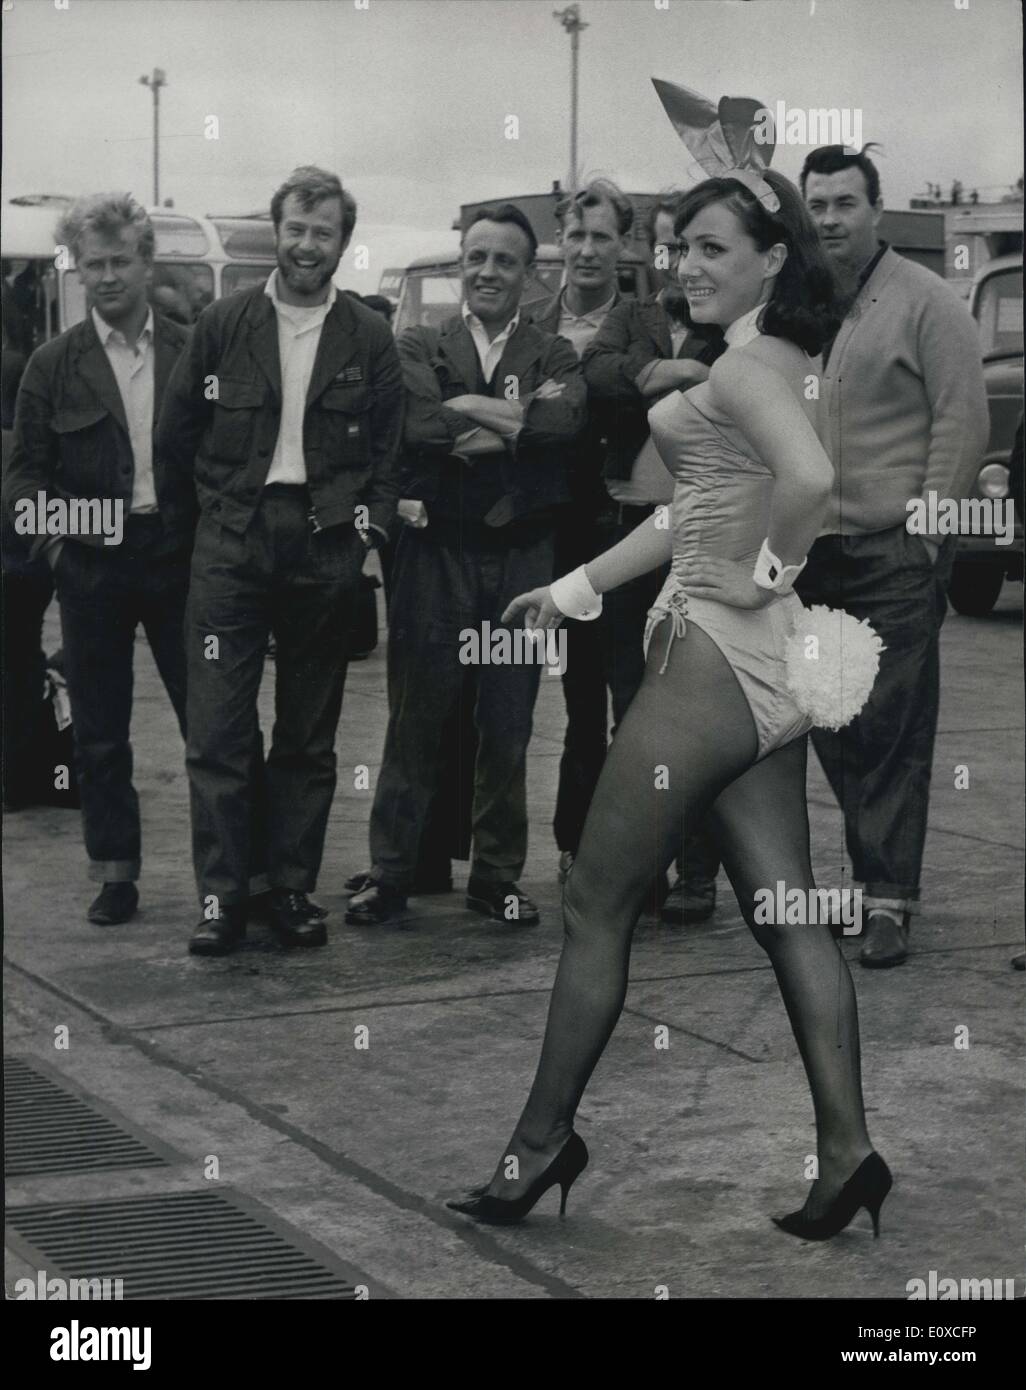 Juin 06, 1966 - Premier Petit Bunny pour Playboy Club London arrive de Hambourg : Helga Schramm, âgée de 24 ans à partir de Hambourg, est arrivé à l'aéroport de Londres aujourd'hui, pour commencer la formation comme à la London lapin Playboy Playboy Club. La London Playboy Club, situé au 45 Park Lane, ouvrira officiellement le 30 juin. Avant de devenir un lapin de Playboy, Helga (mesure 34''x25''x35'') a travaillé à Hambourg et l'anglais, français et allemand. À la London Playboy Club, Helga se joindra à la lapins britanniques 85 Bunny Training School Banque D'Images